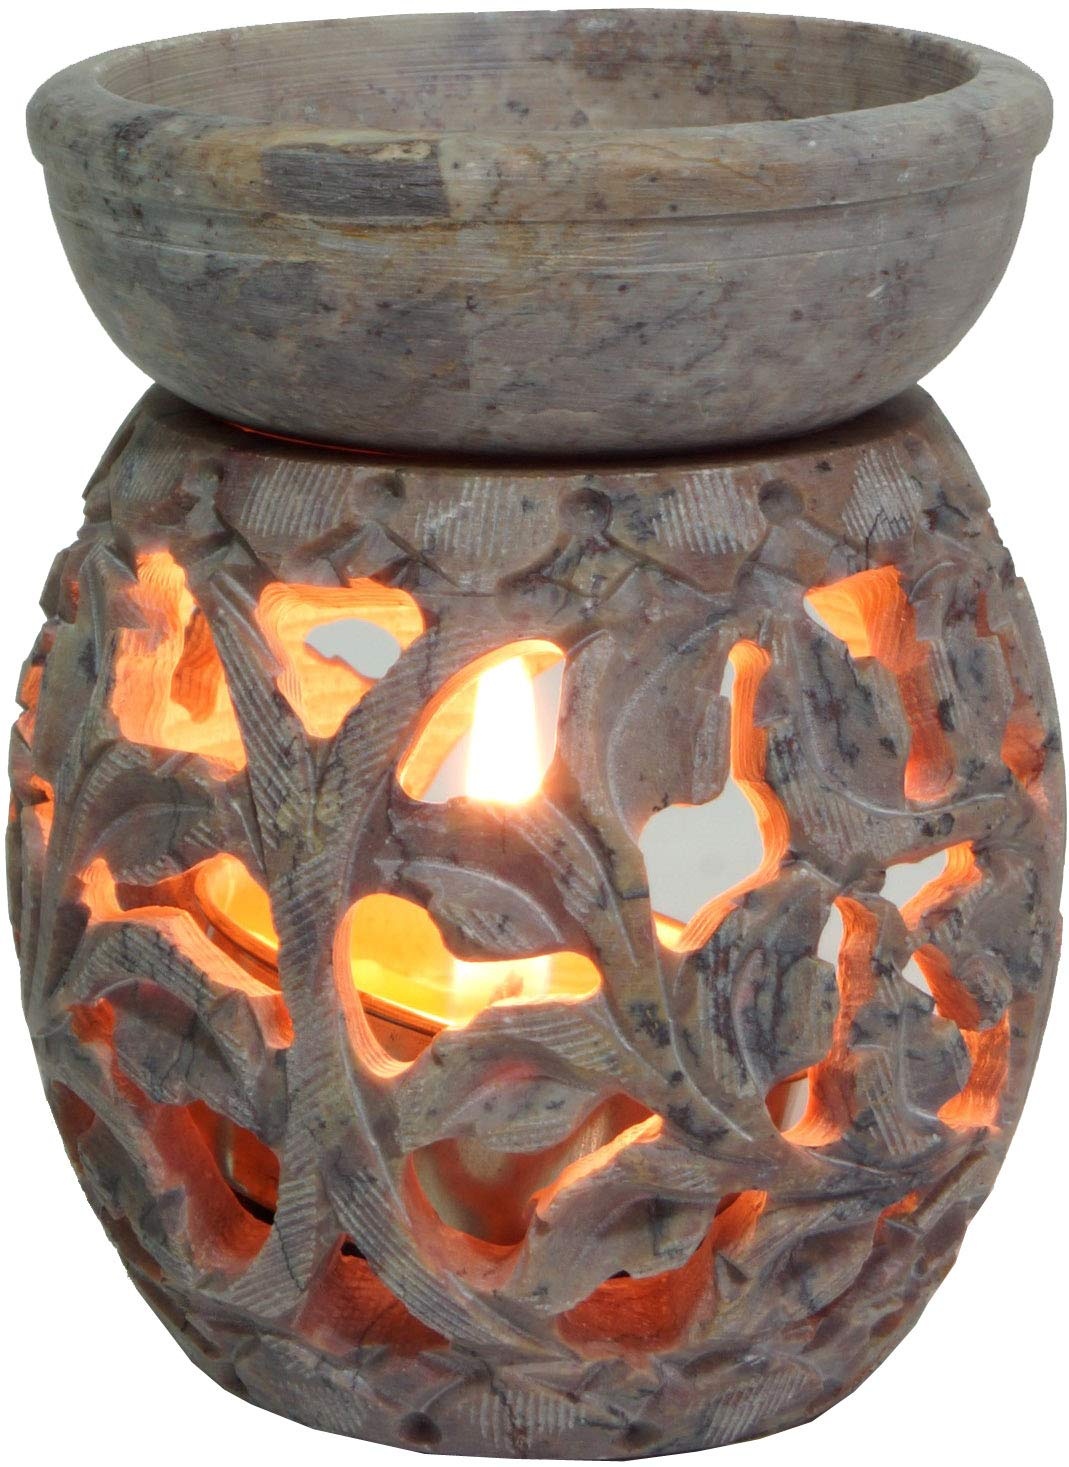 GURU SHOP Indische Duftlampe, ätherisches Öl Diffusor, Teelicht Halter für Aromatherapie, Aromalampe aus Speckstein - Rund Blumenranke 1, Creme-weiß, 8x6x6 cm, Duftlampen & Öllampen